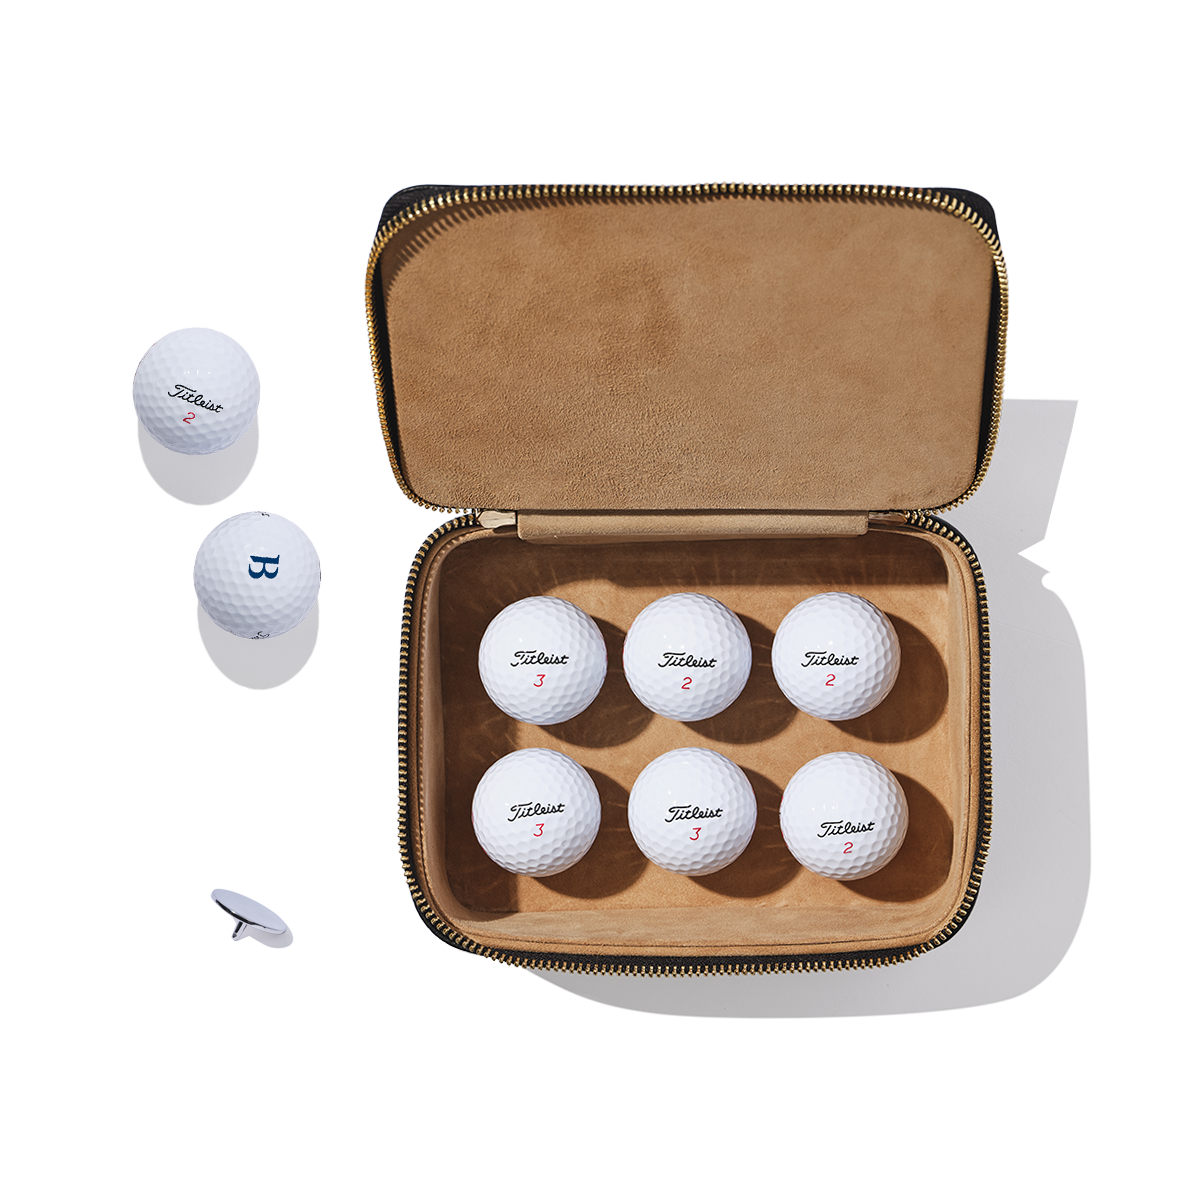 Golf-Balls-Set-Leather_6022f0e3-0397-471a-957c-3fc87eb50843.png